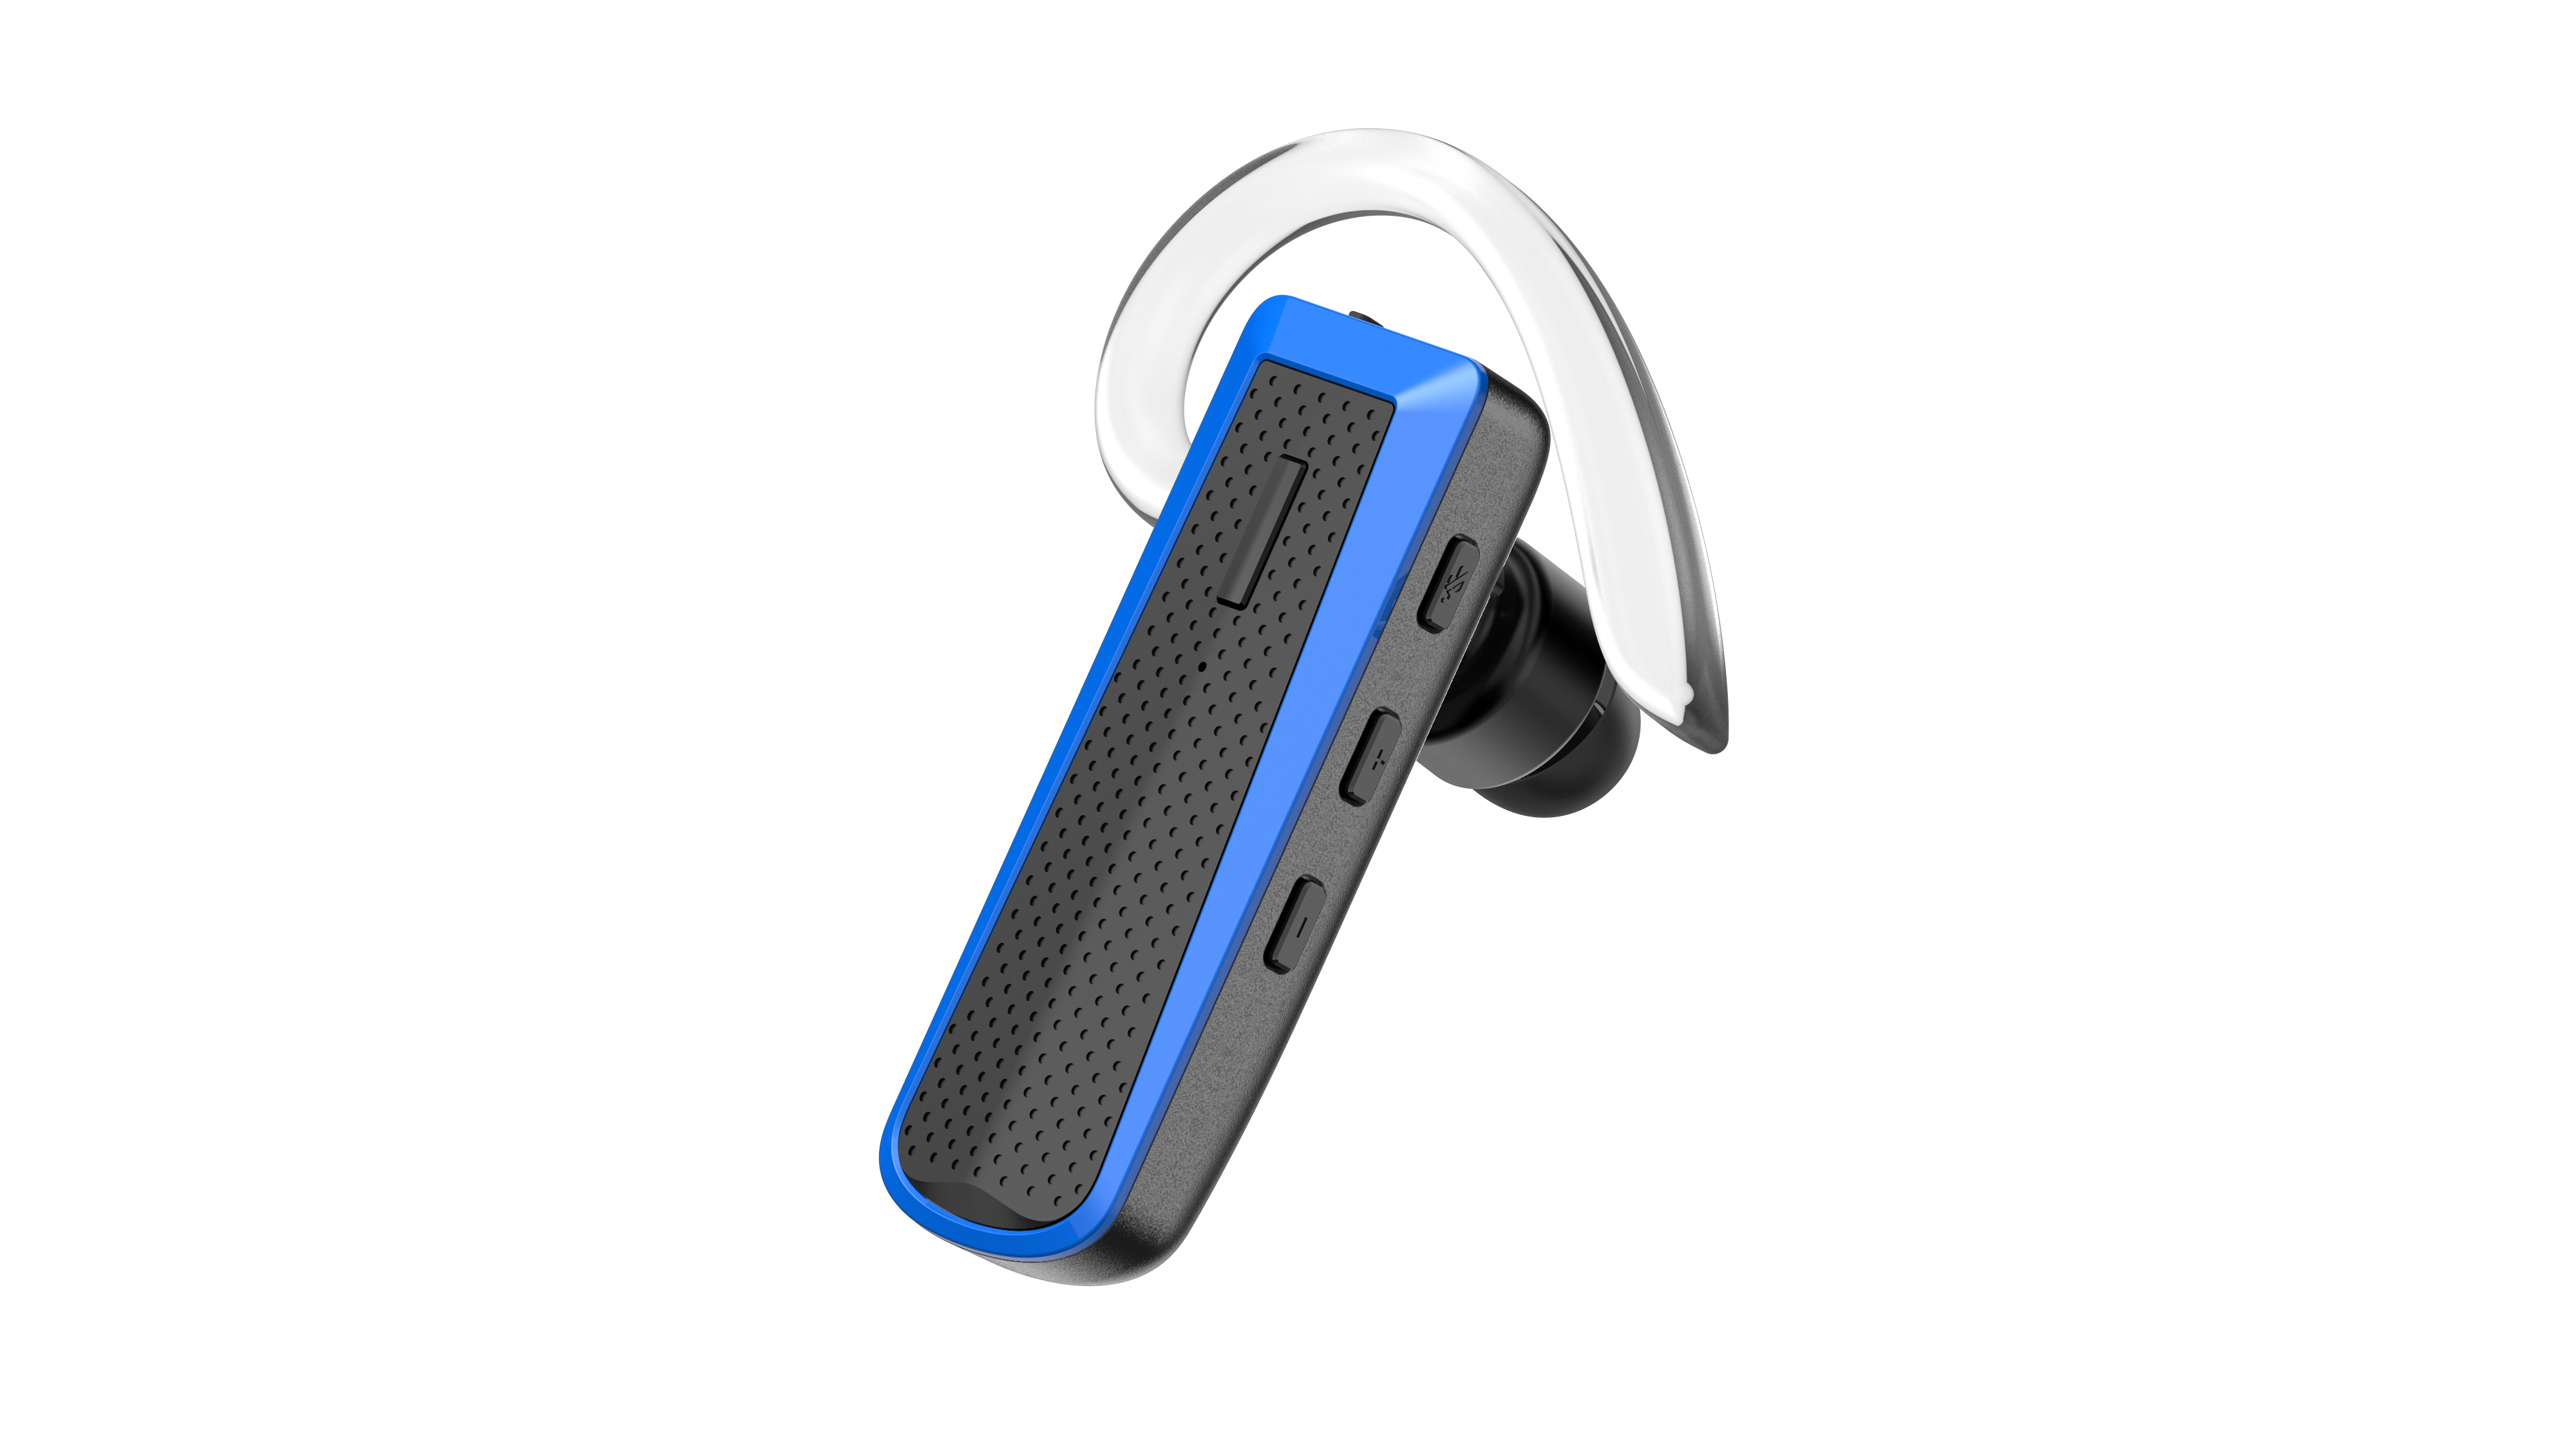 Bluetooth HAPPYSET Blau Bluetooth Headset Blue, In-ear